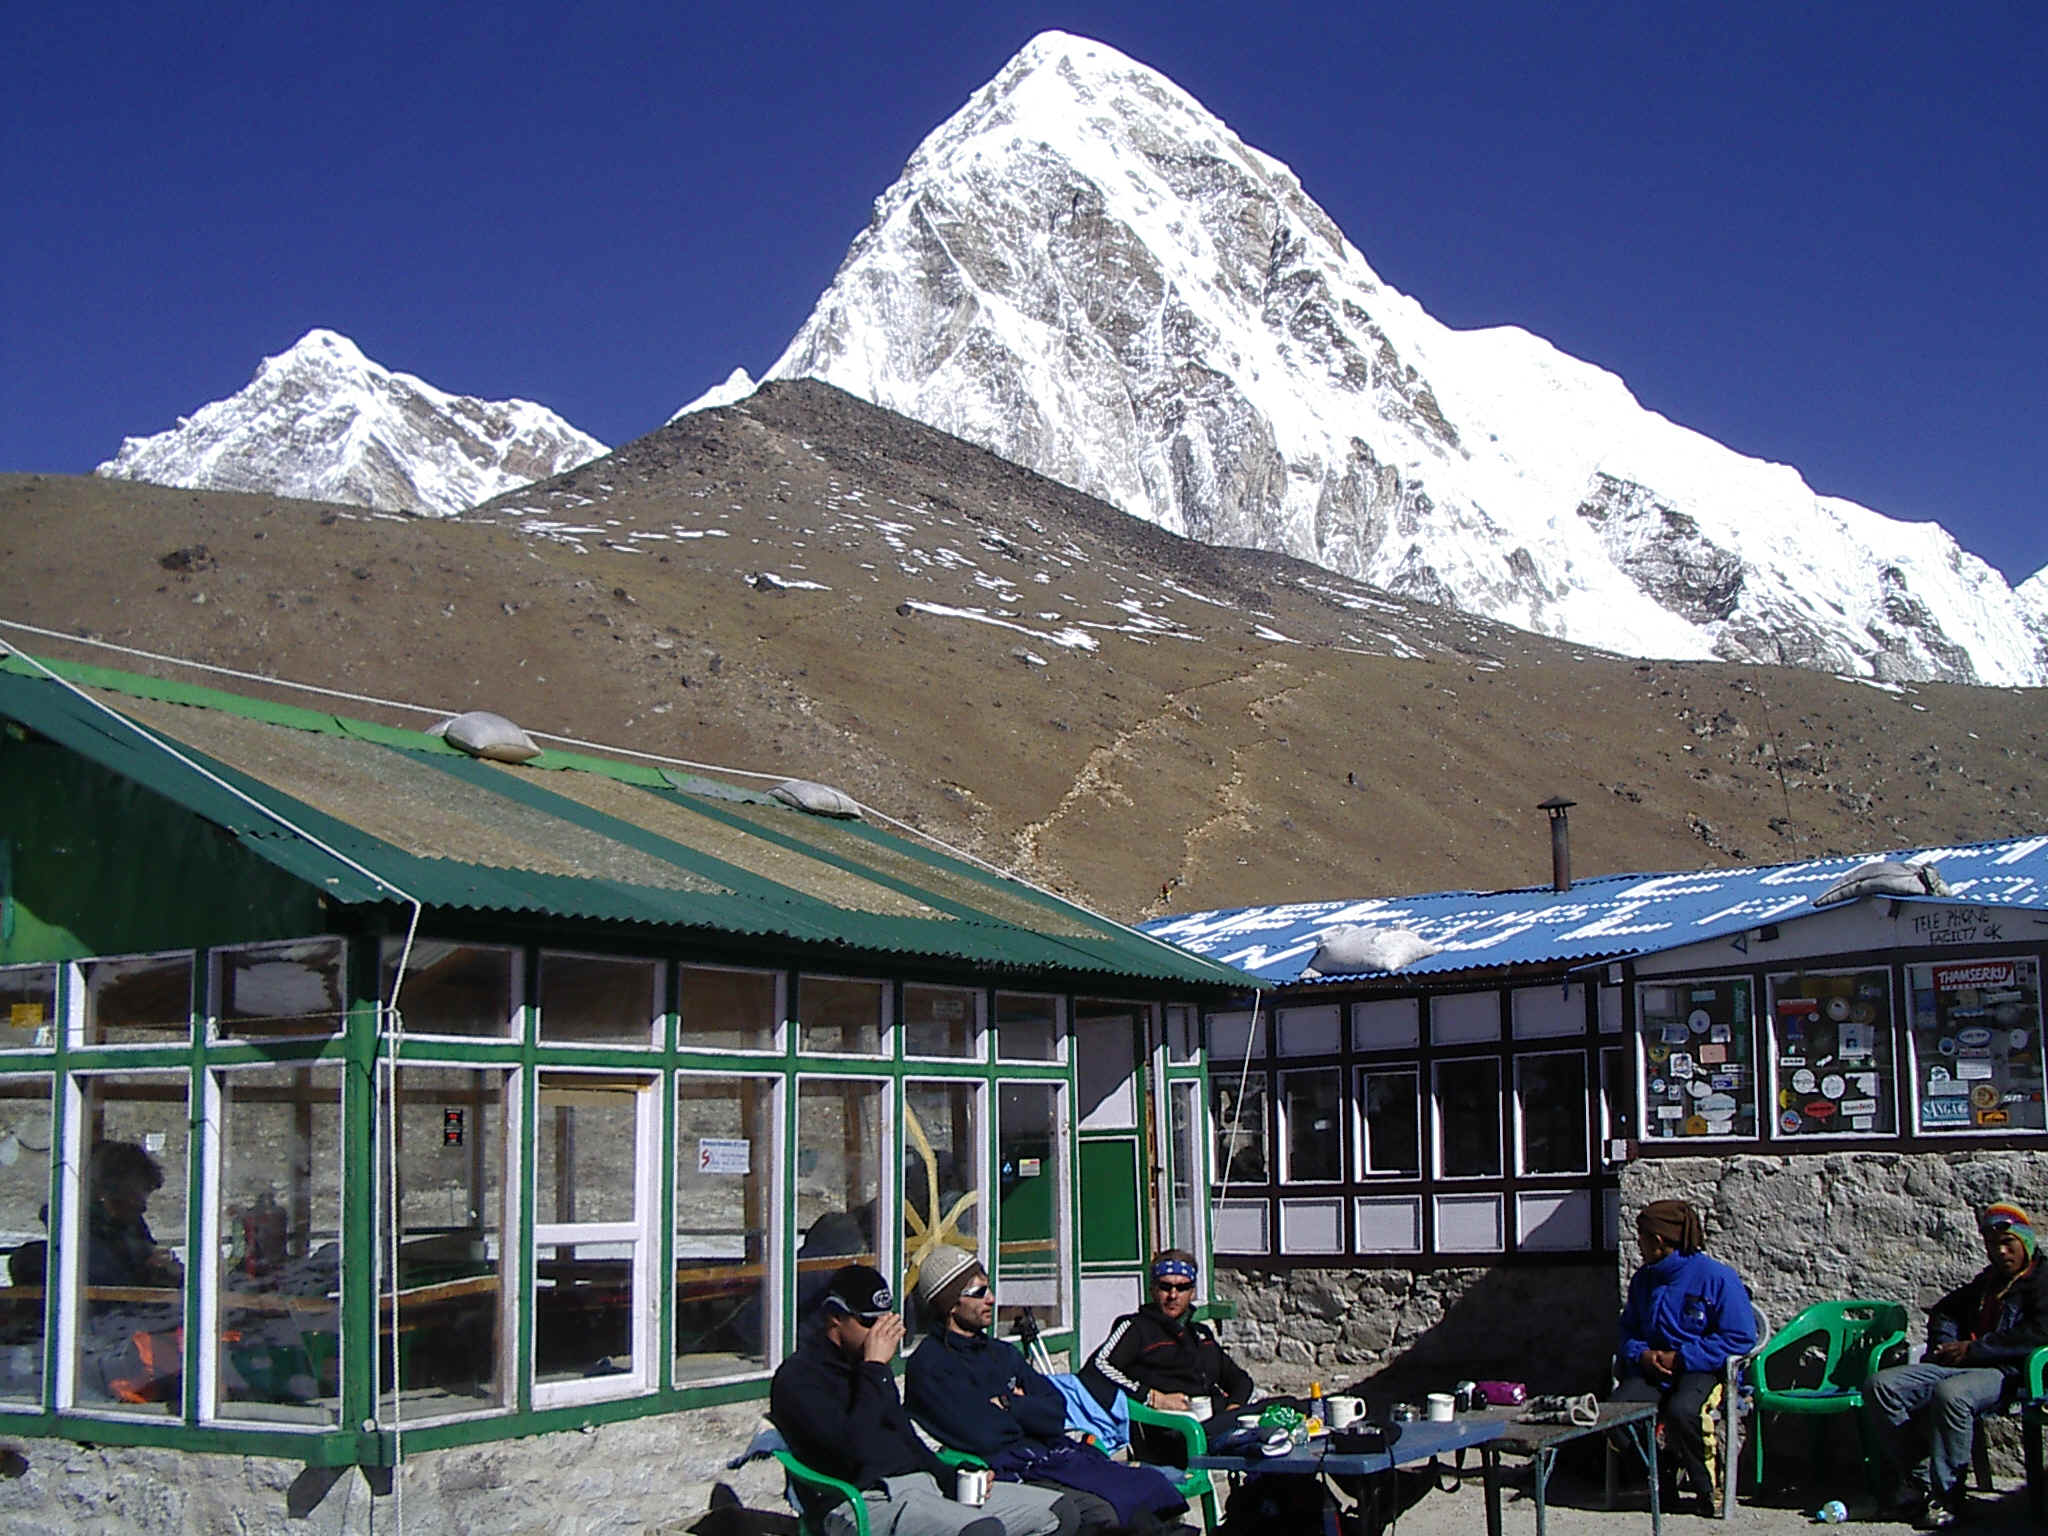 Gorak Shep lodge at the base of Kala Pattar and Mt. Pumori